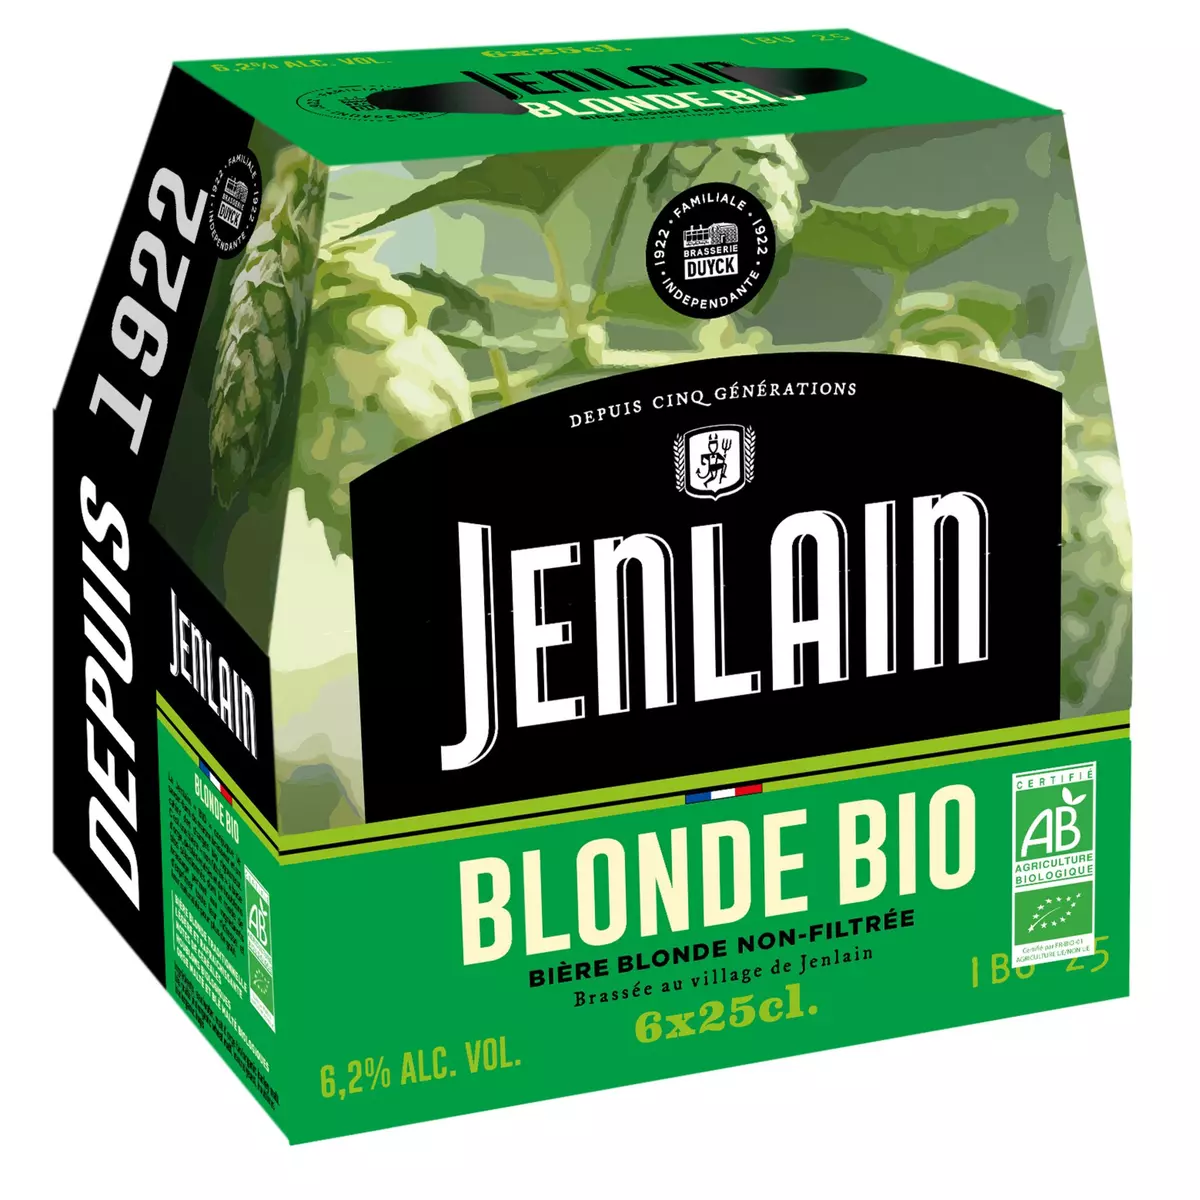 JENLAIN Bière blonde bio non filtrée bouteilles 6x25cl